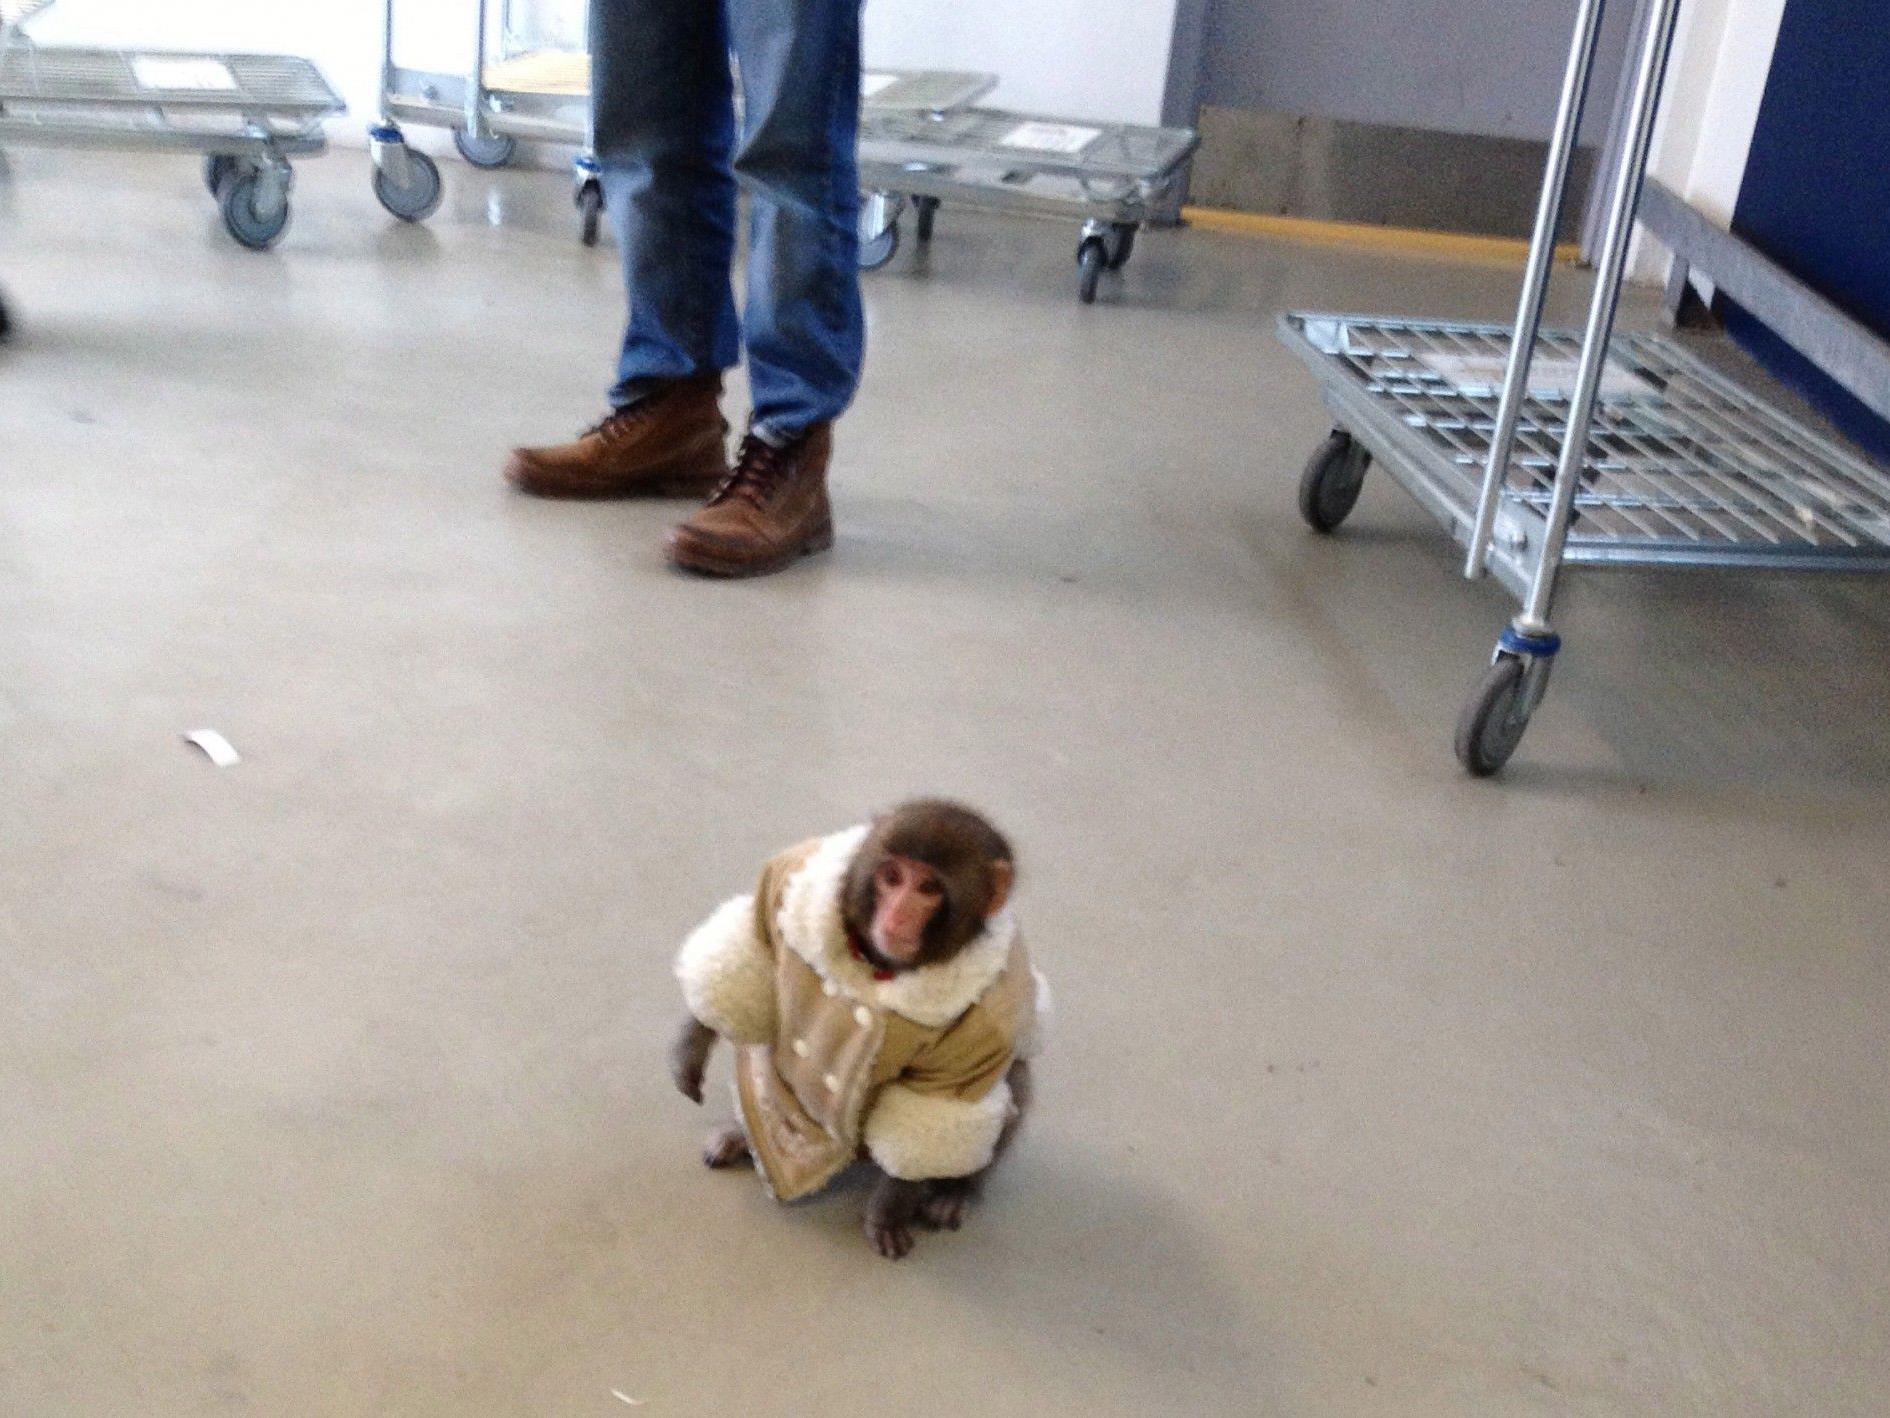 Affe "Darwin" bei seinem Ausflug bei Ikea in Toronto.